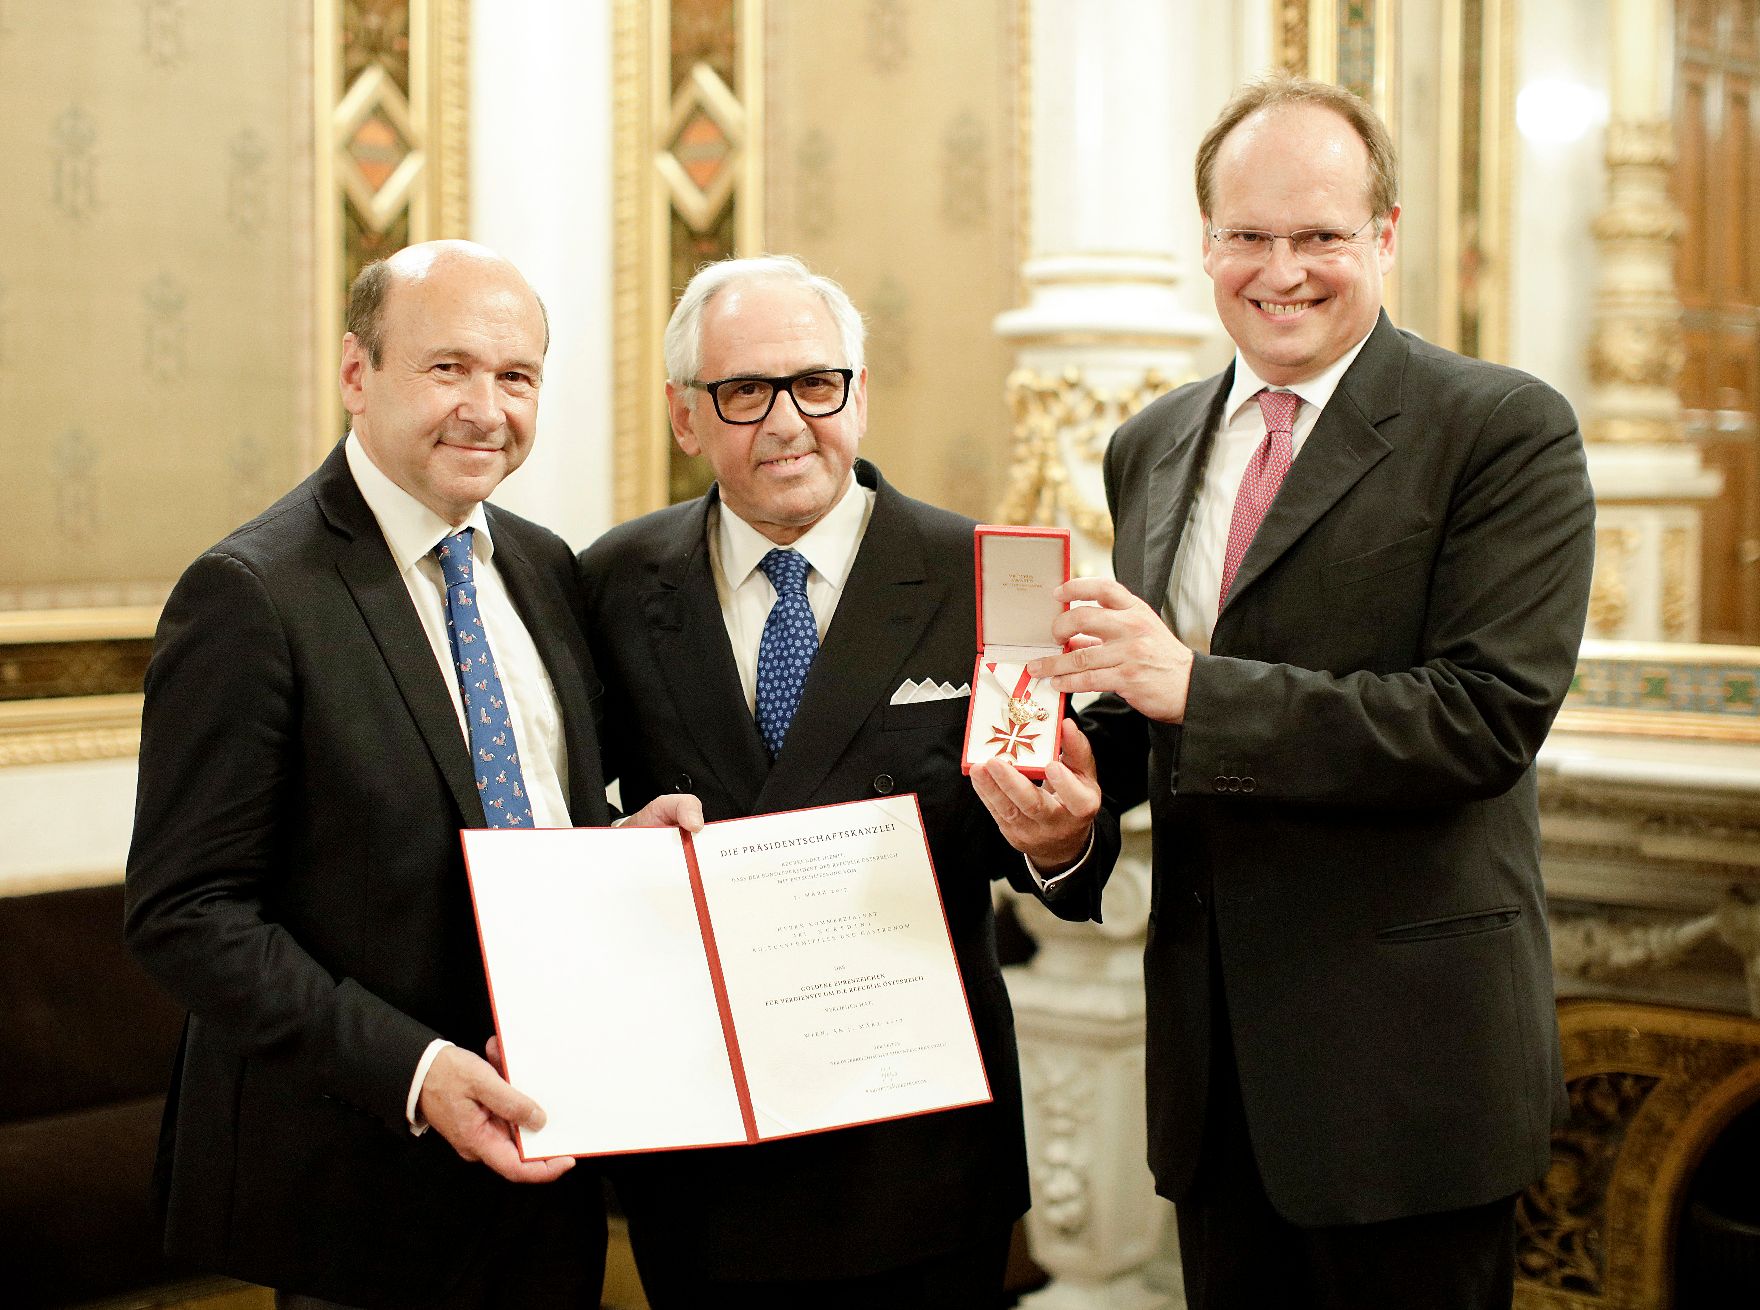 Am 21. Juni 2018 fand die Überreichung des Goldenen Ehrenzeichens für Verdienste um die Republik Österreich an Aki Nuredini (m.) statt. Im Bild mit dem Direktor der Staatsoper und Laudator Dominique Meyer (l.).